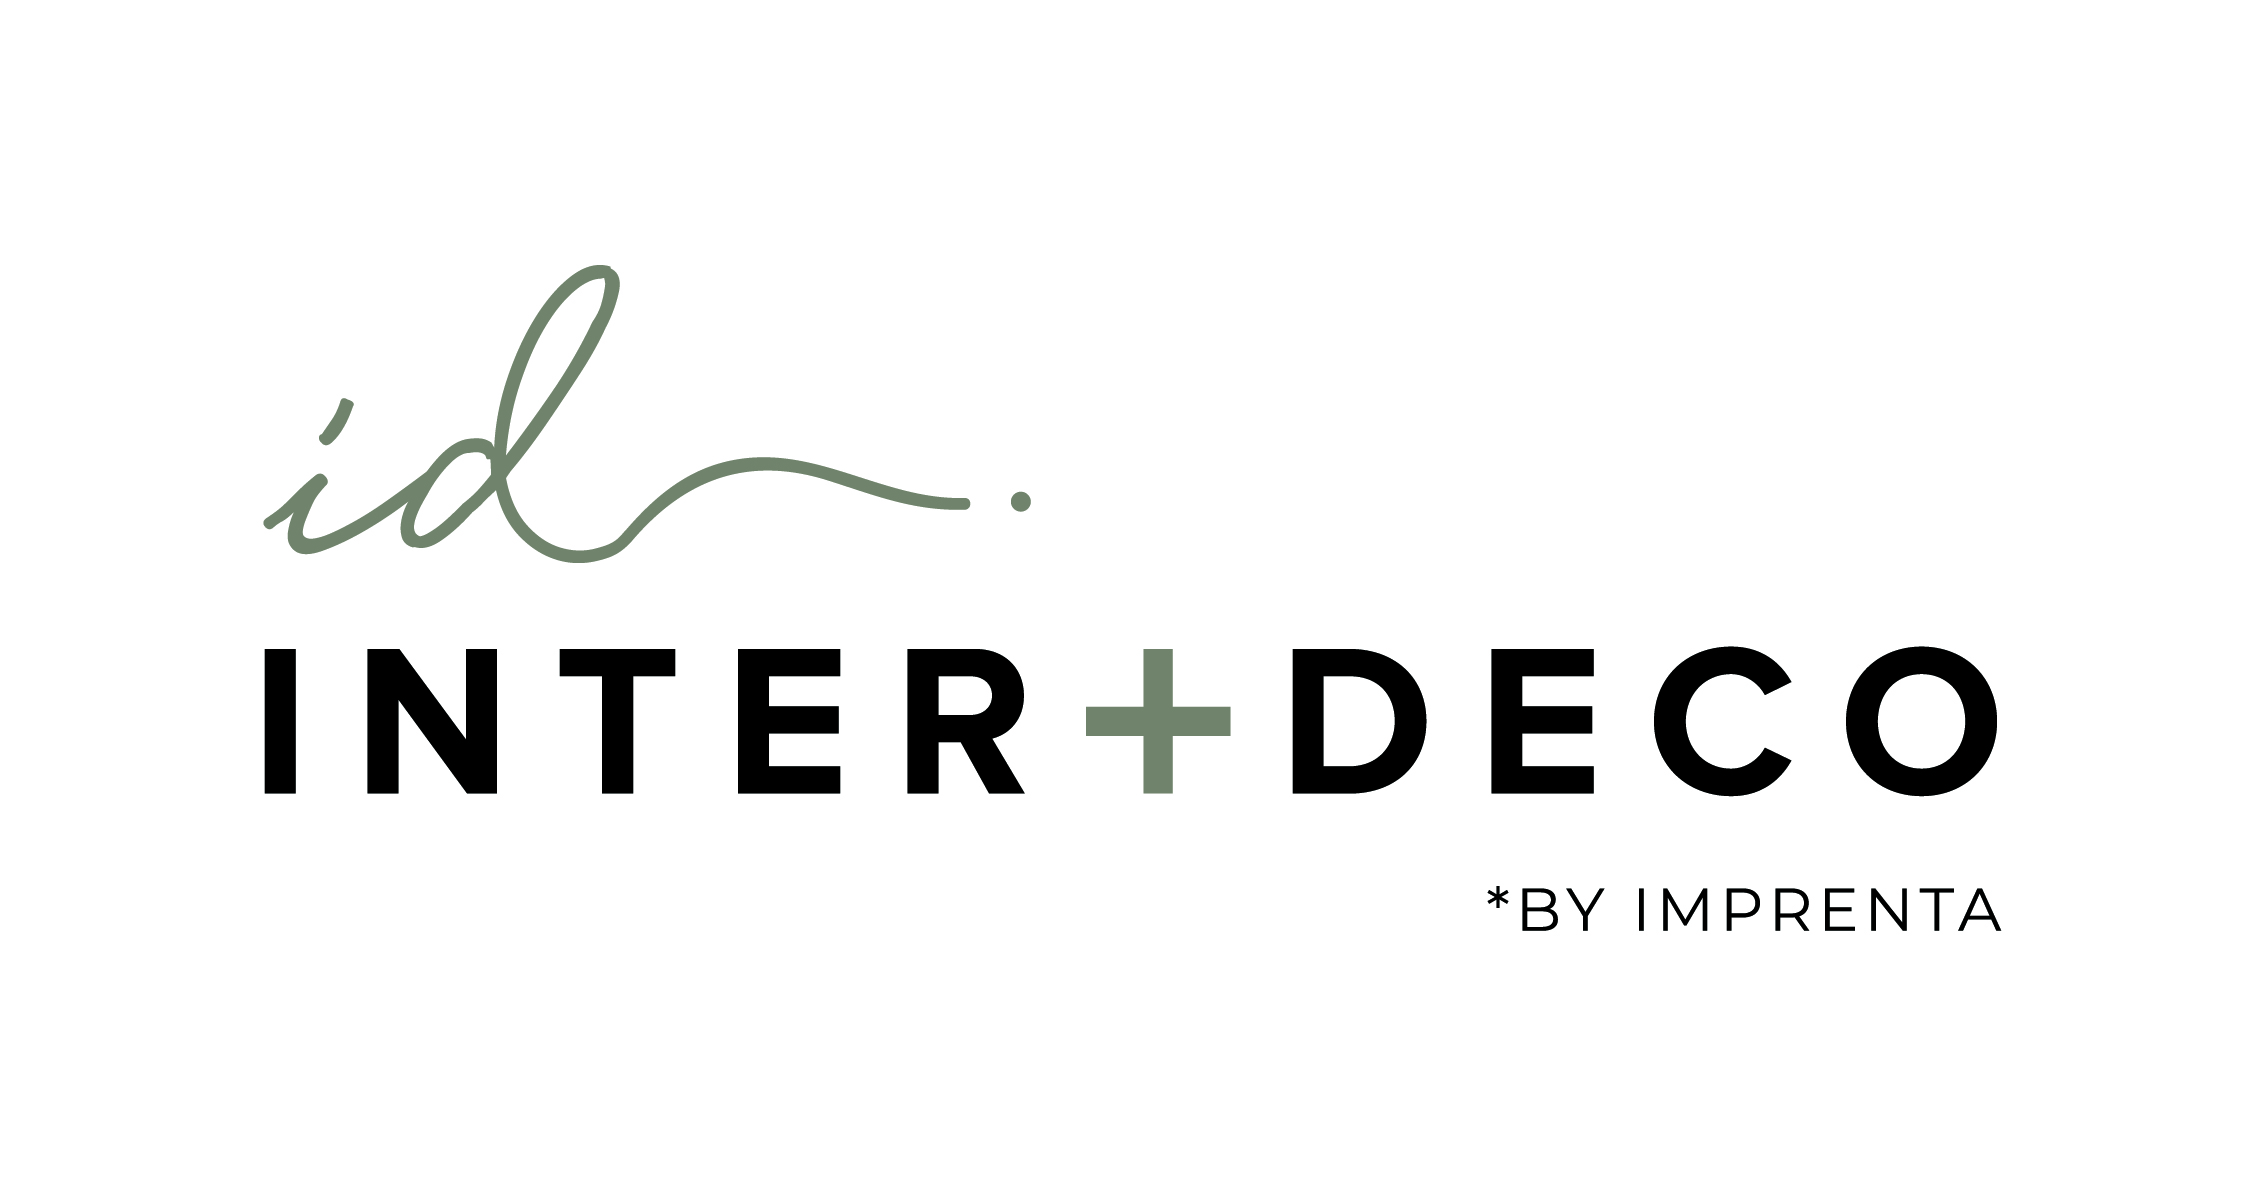 textielbedrukkers Antwerpen Inter-deco